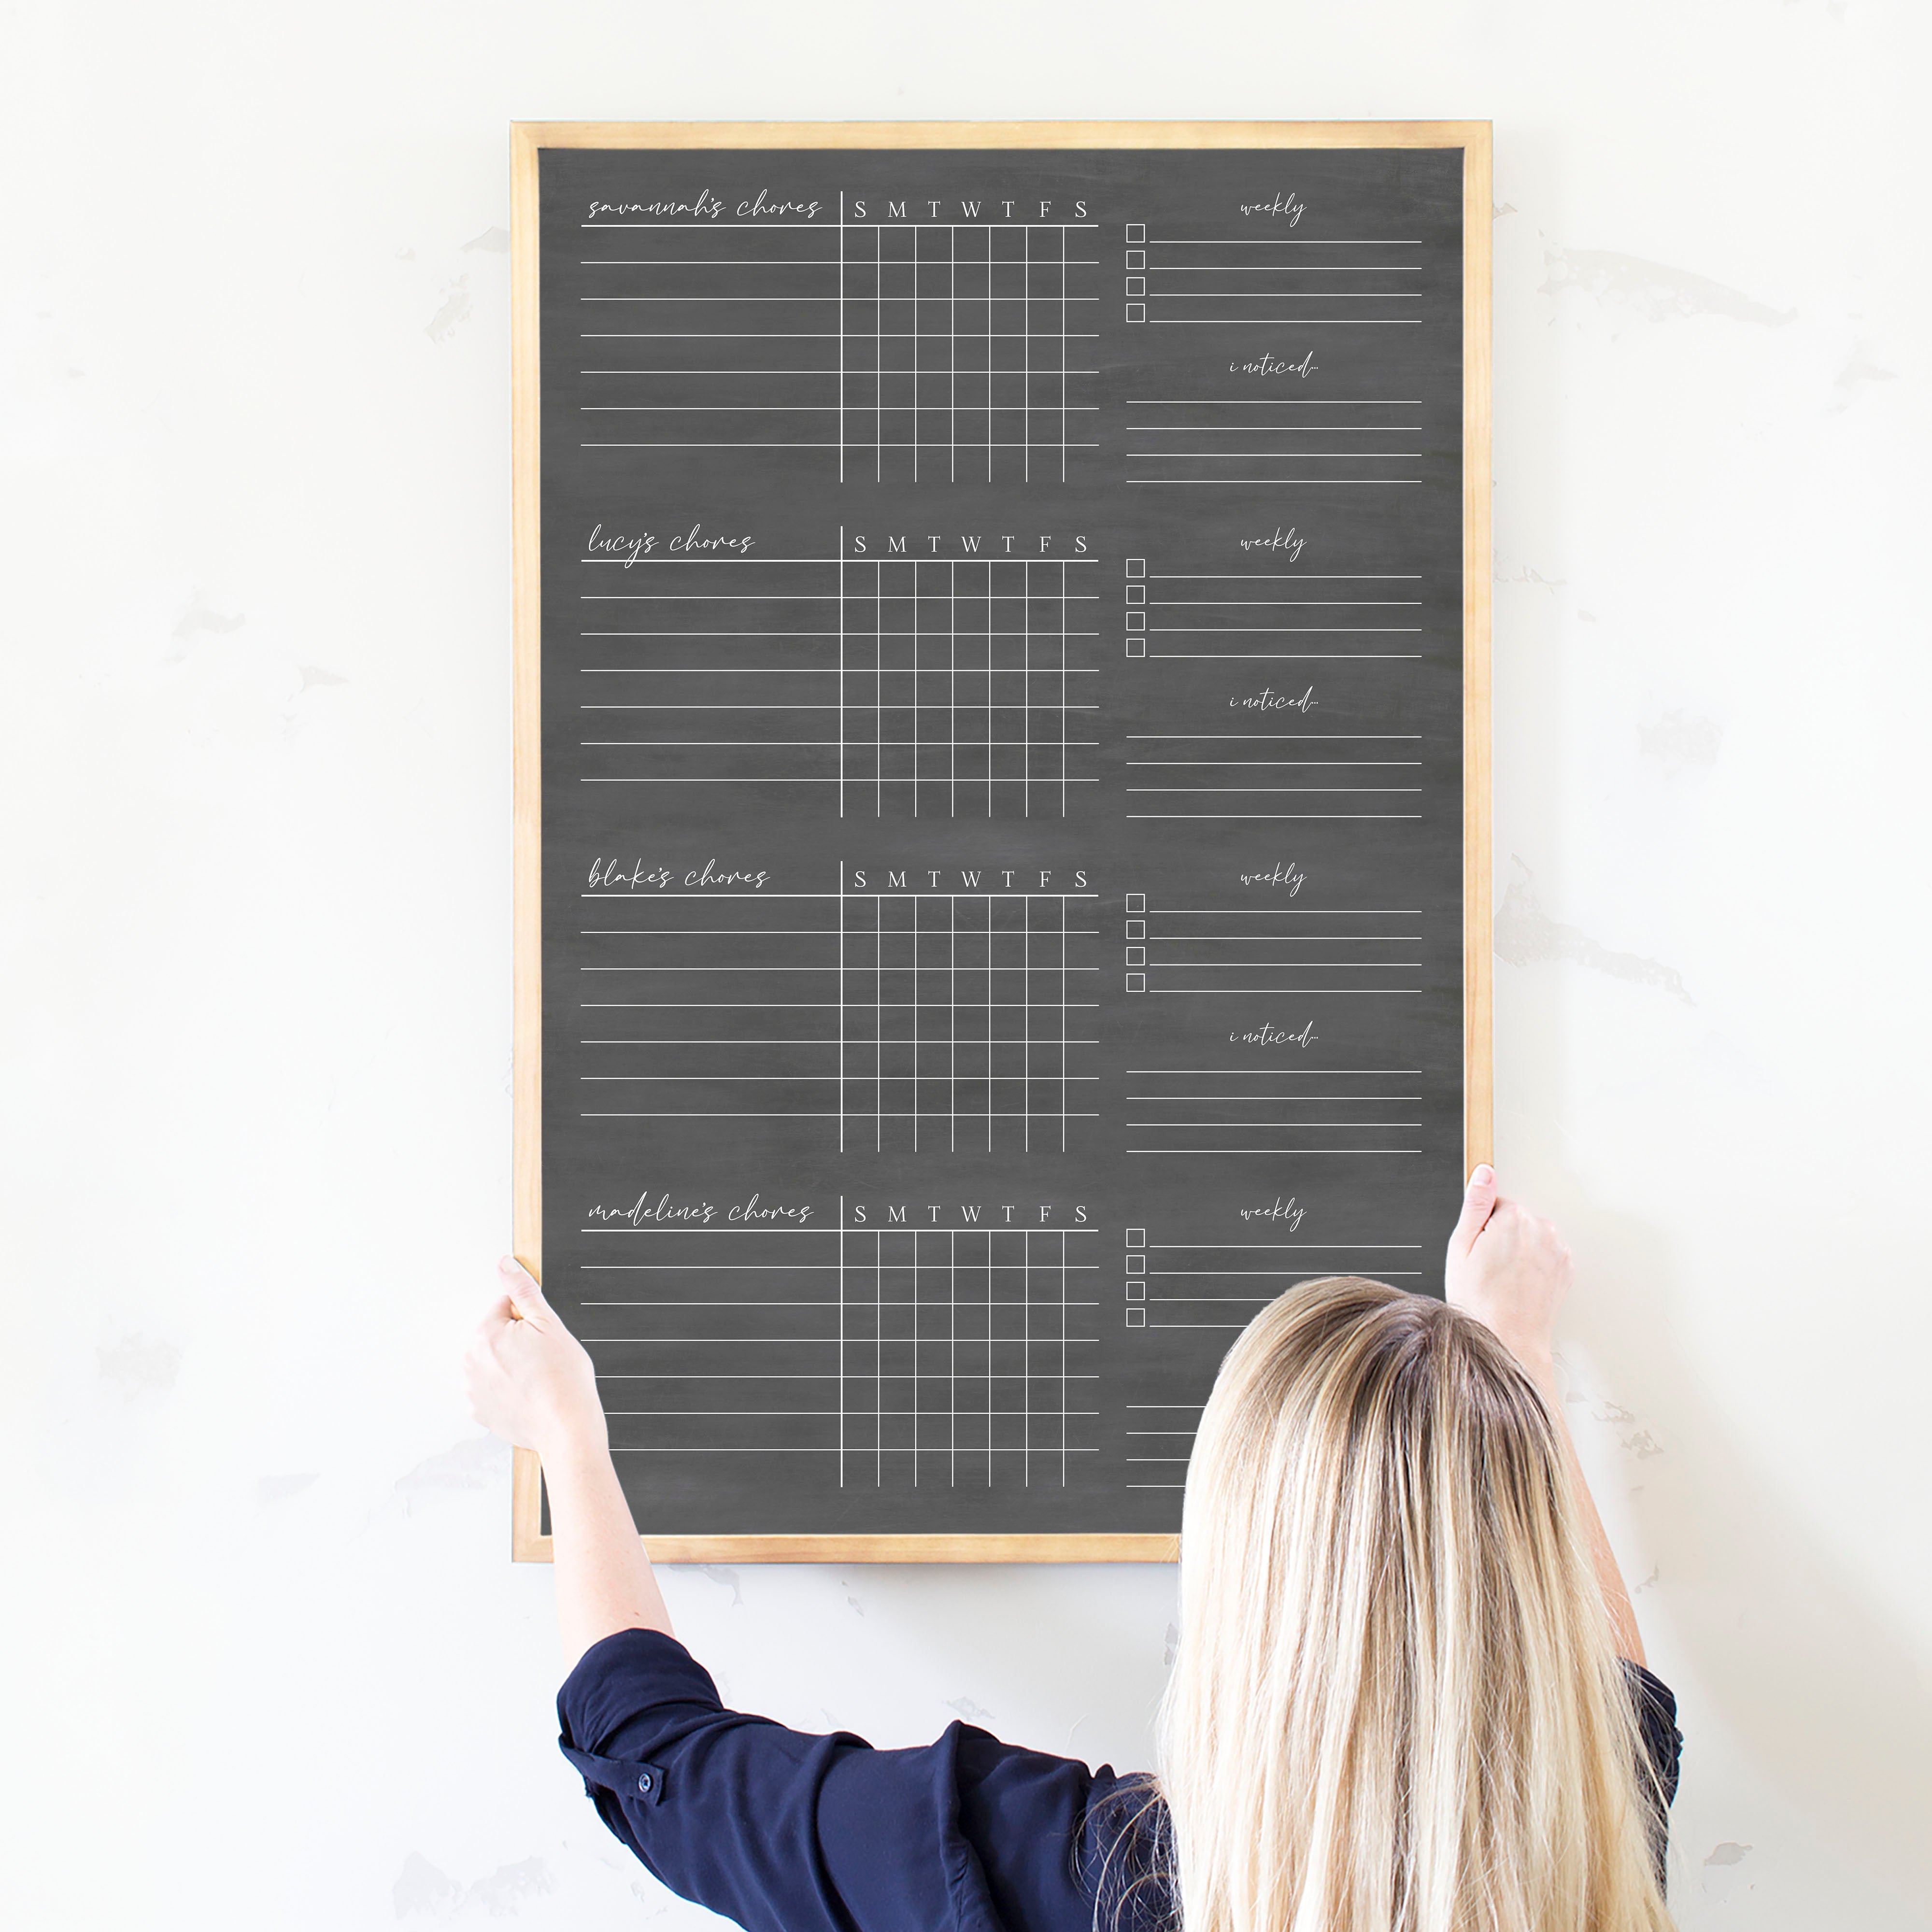 4 Person Framed Chalkboard Chore Chart  | Vertical Pennington